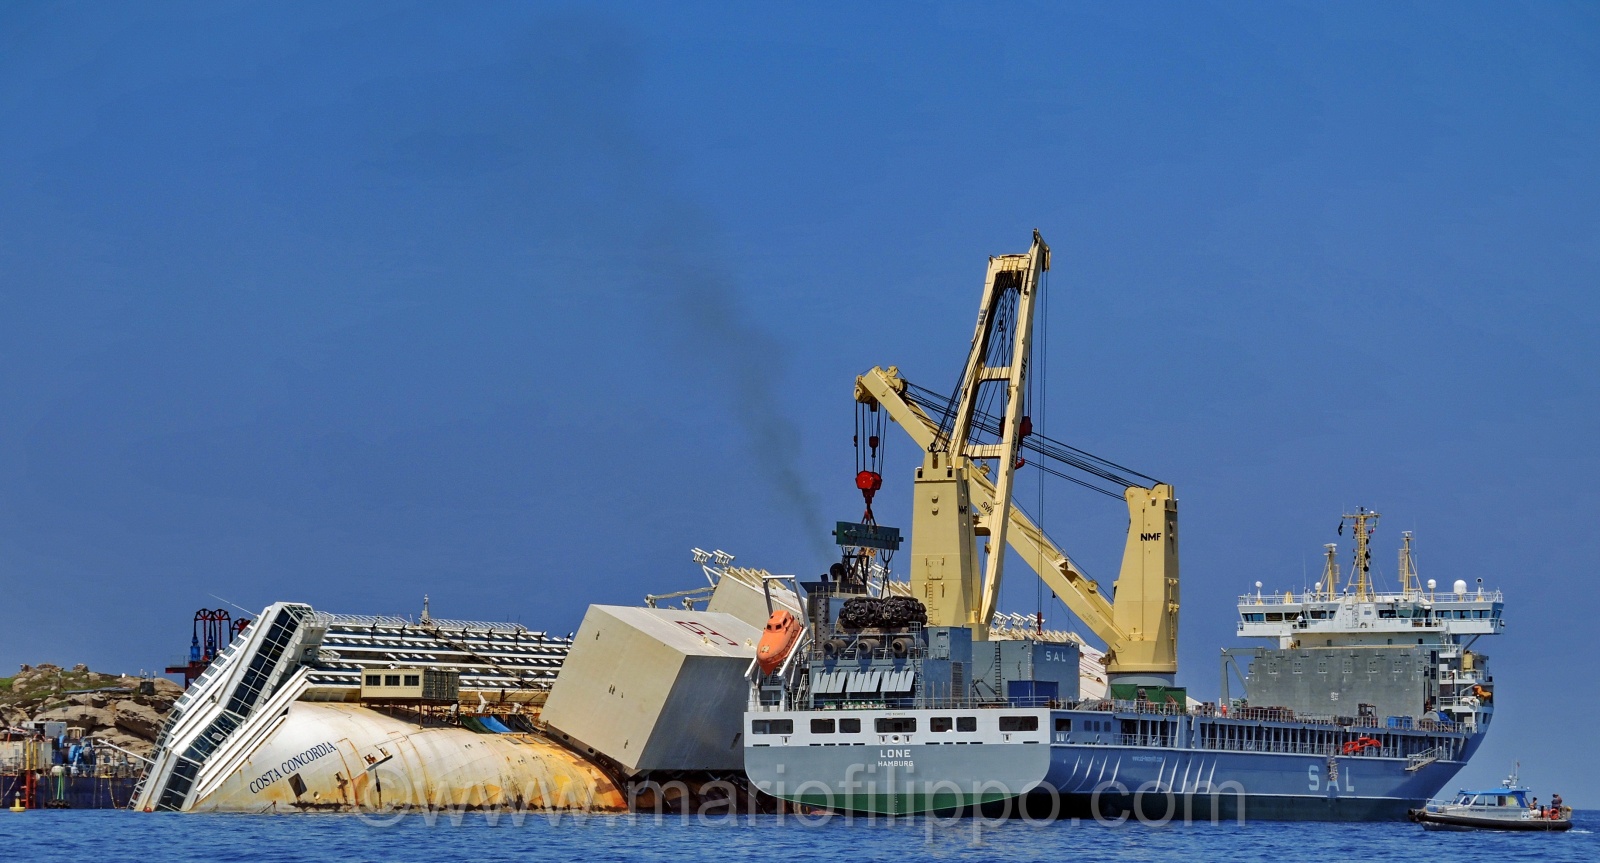 Il naufragio della nave "Costa Concordia" del 13 gennaio 2012 davanti all'isola Del Giglio